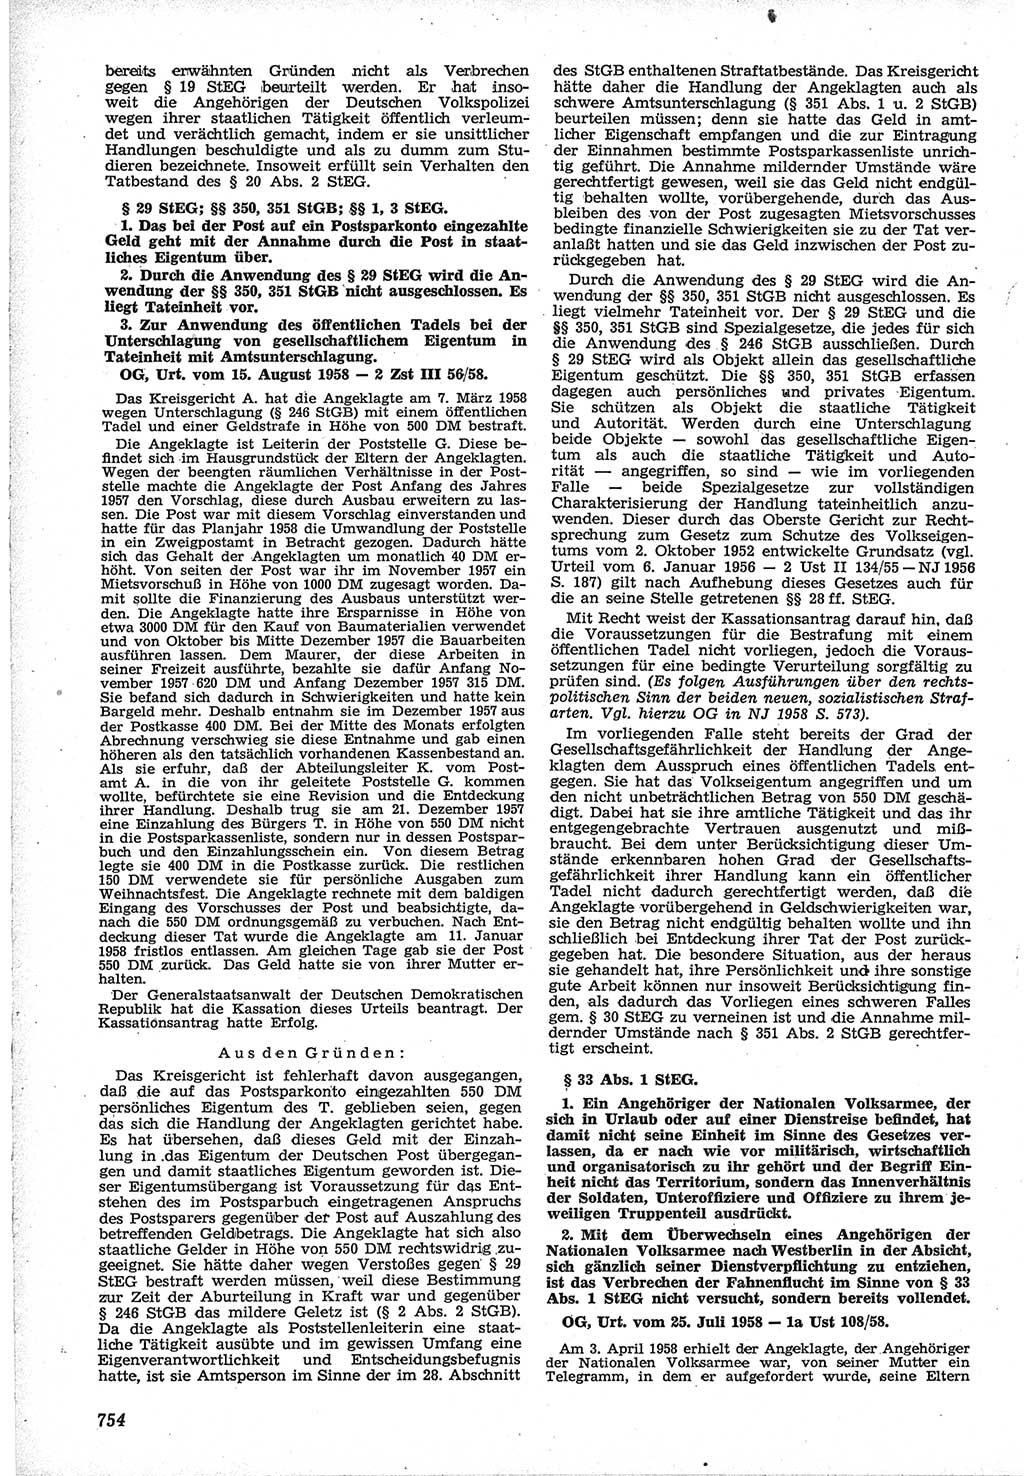 Neue Justiz (NJ), Zeitschrift für Recht und Rechtswissenschaft [Deutsche Demokratische Republik (DDR)], 12. Jahrgang 1958, Seite 754 (NJ DDR 1958, S. 754)